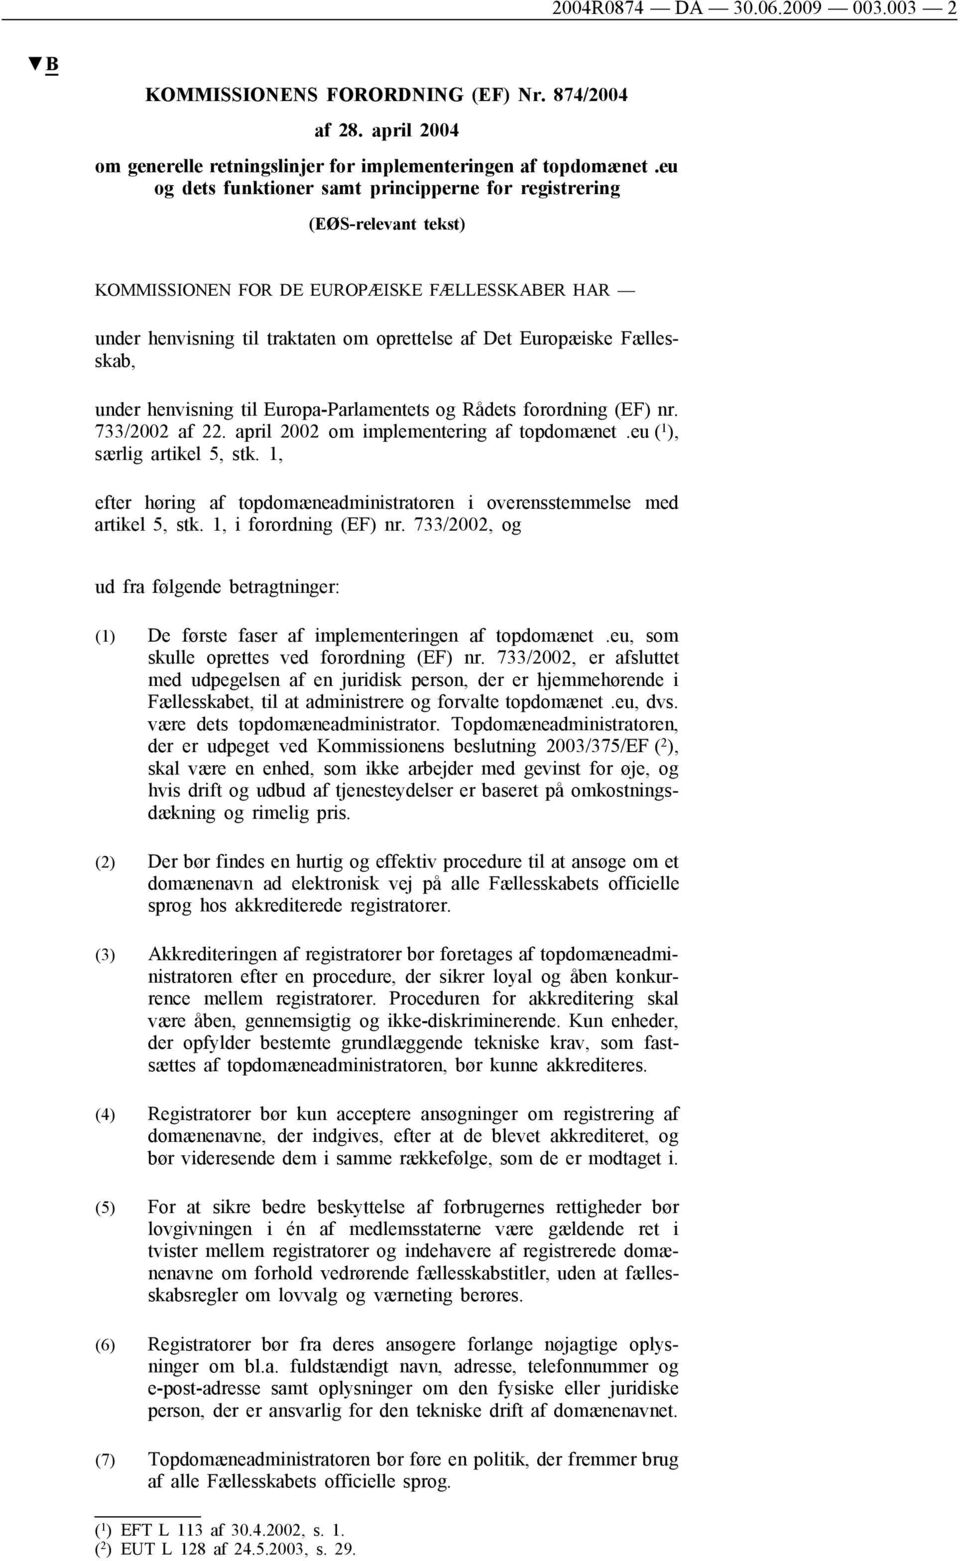 Fællesskab, under henvisning til Europa-Parlamentets og Rådets forordning (EF) nr. 733/2002 af 22. april 2002 om implementering af topdomænet.eu ( 1 ), særlig artikel 5, stk.